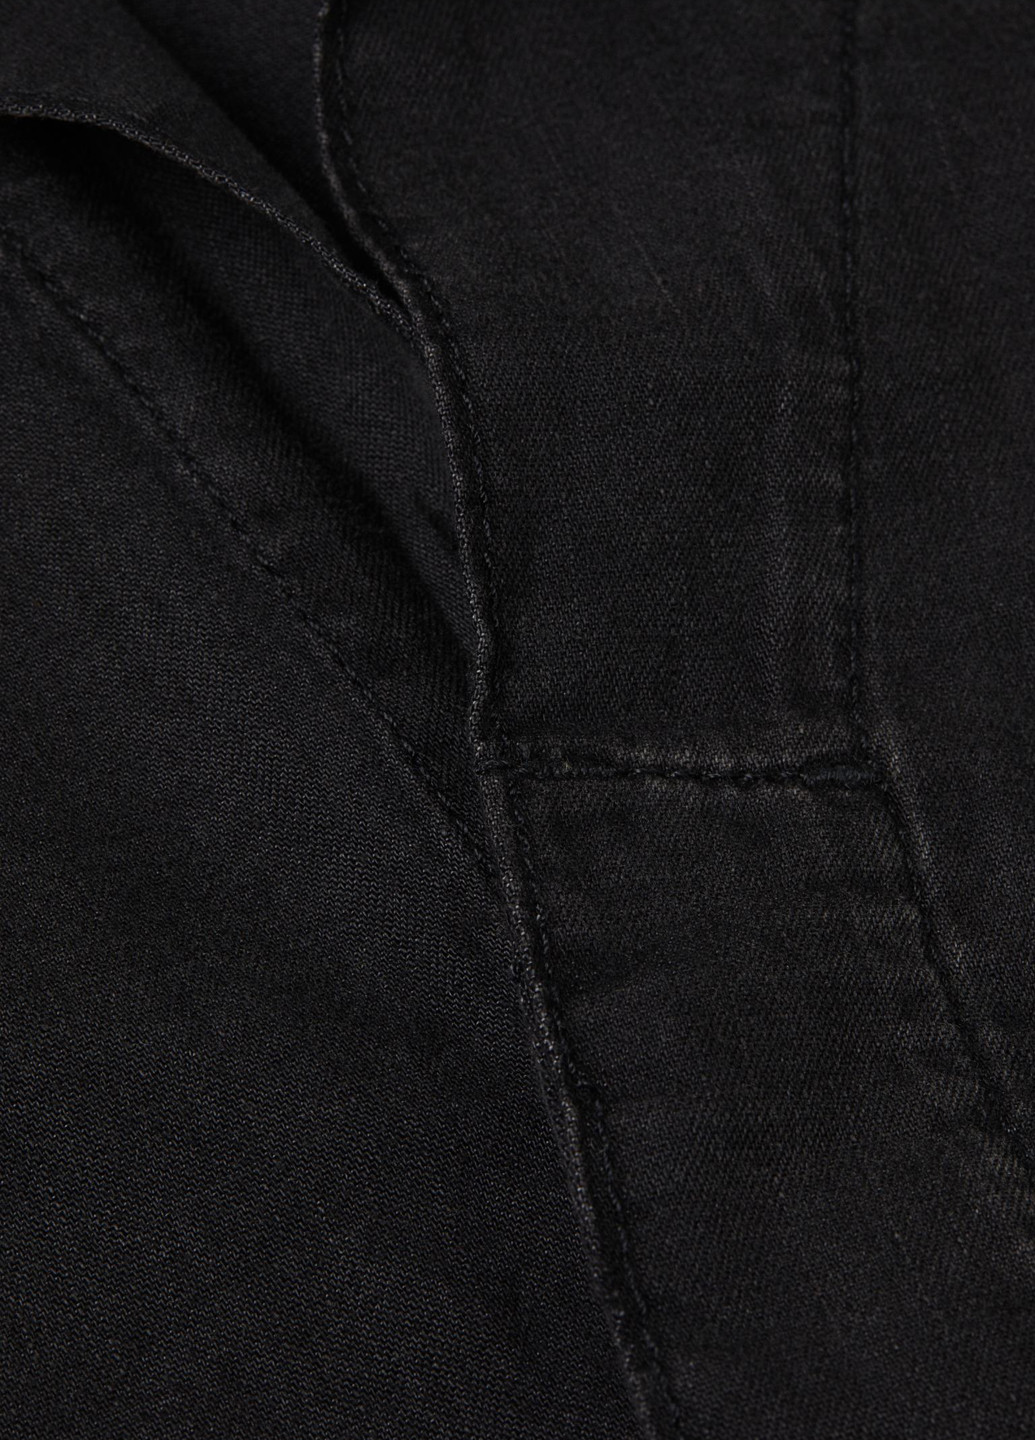 Комбинезон H&M комбинезон-шорты однотонный тёмно-серый денил хлопок